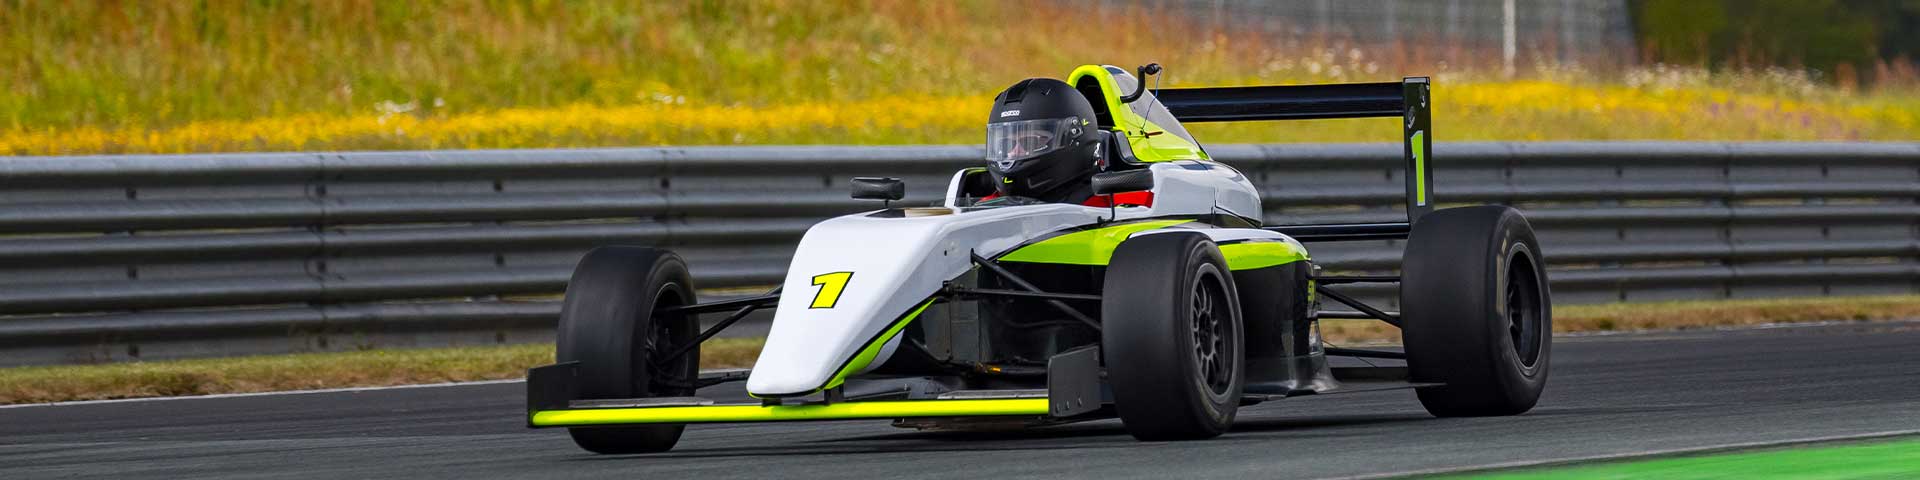 Formule 4 Tatuus sur circuit